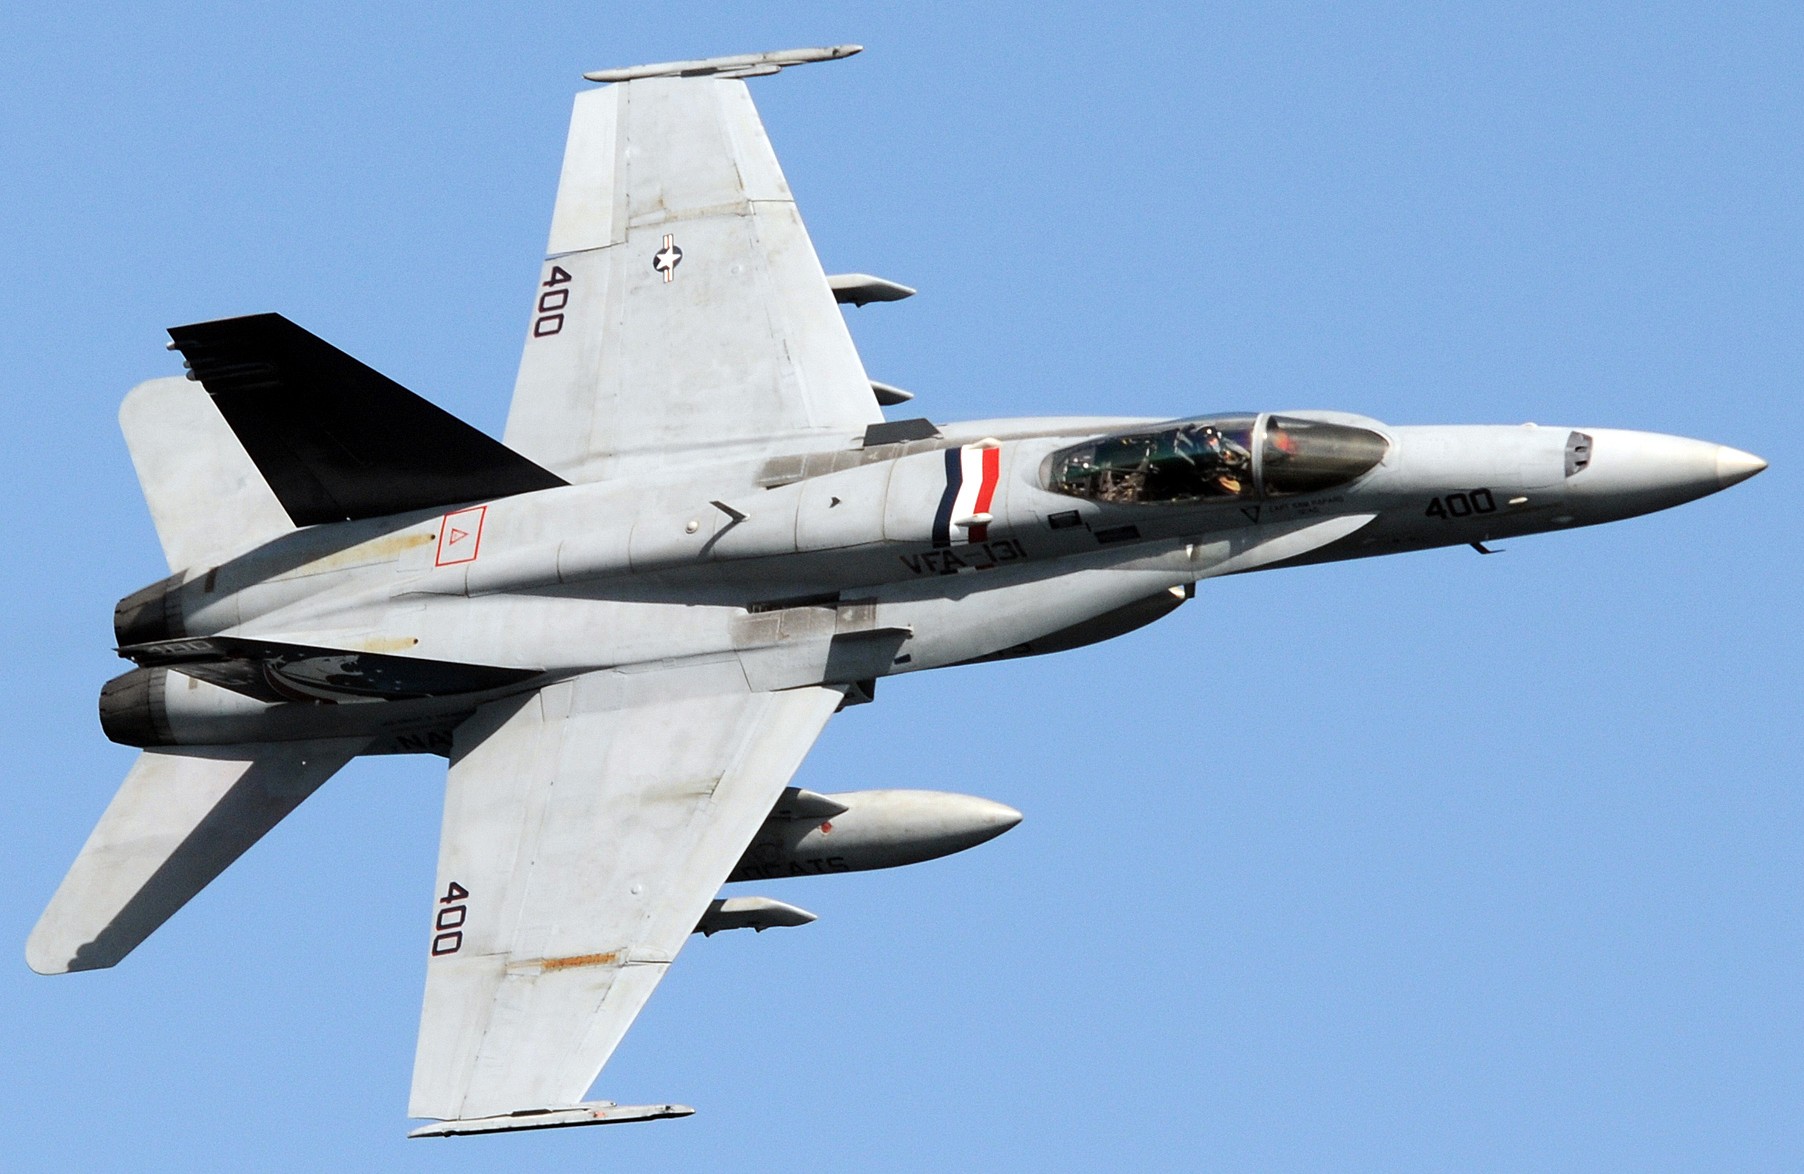 vfa-131 wildcats strike fighter squadron f/a-18c hornet cvw-7 uss dwight d. eisenhower cvn-69 2010 85